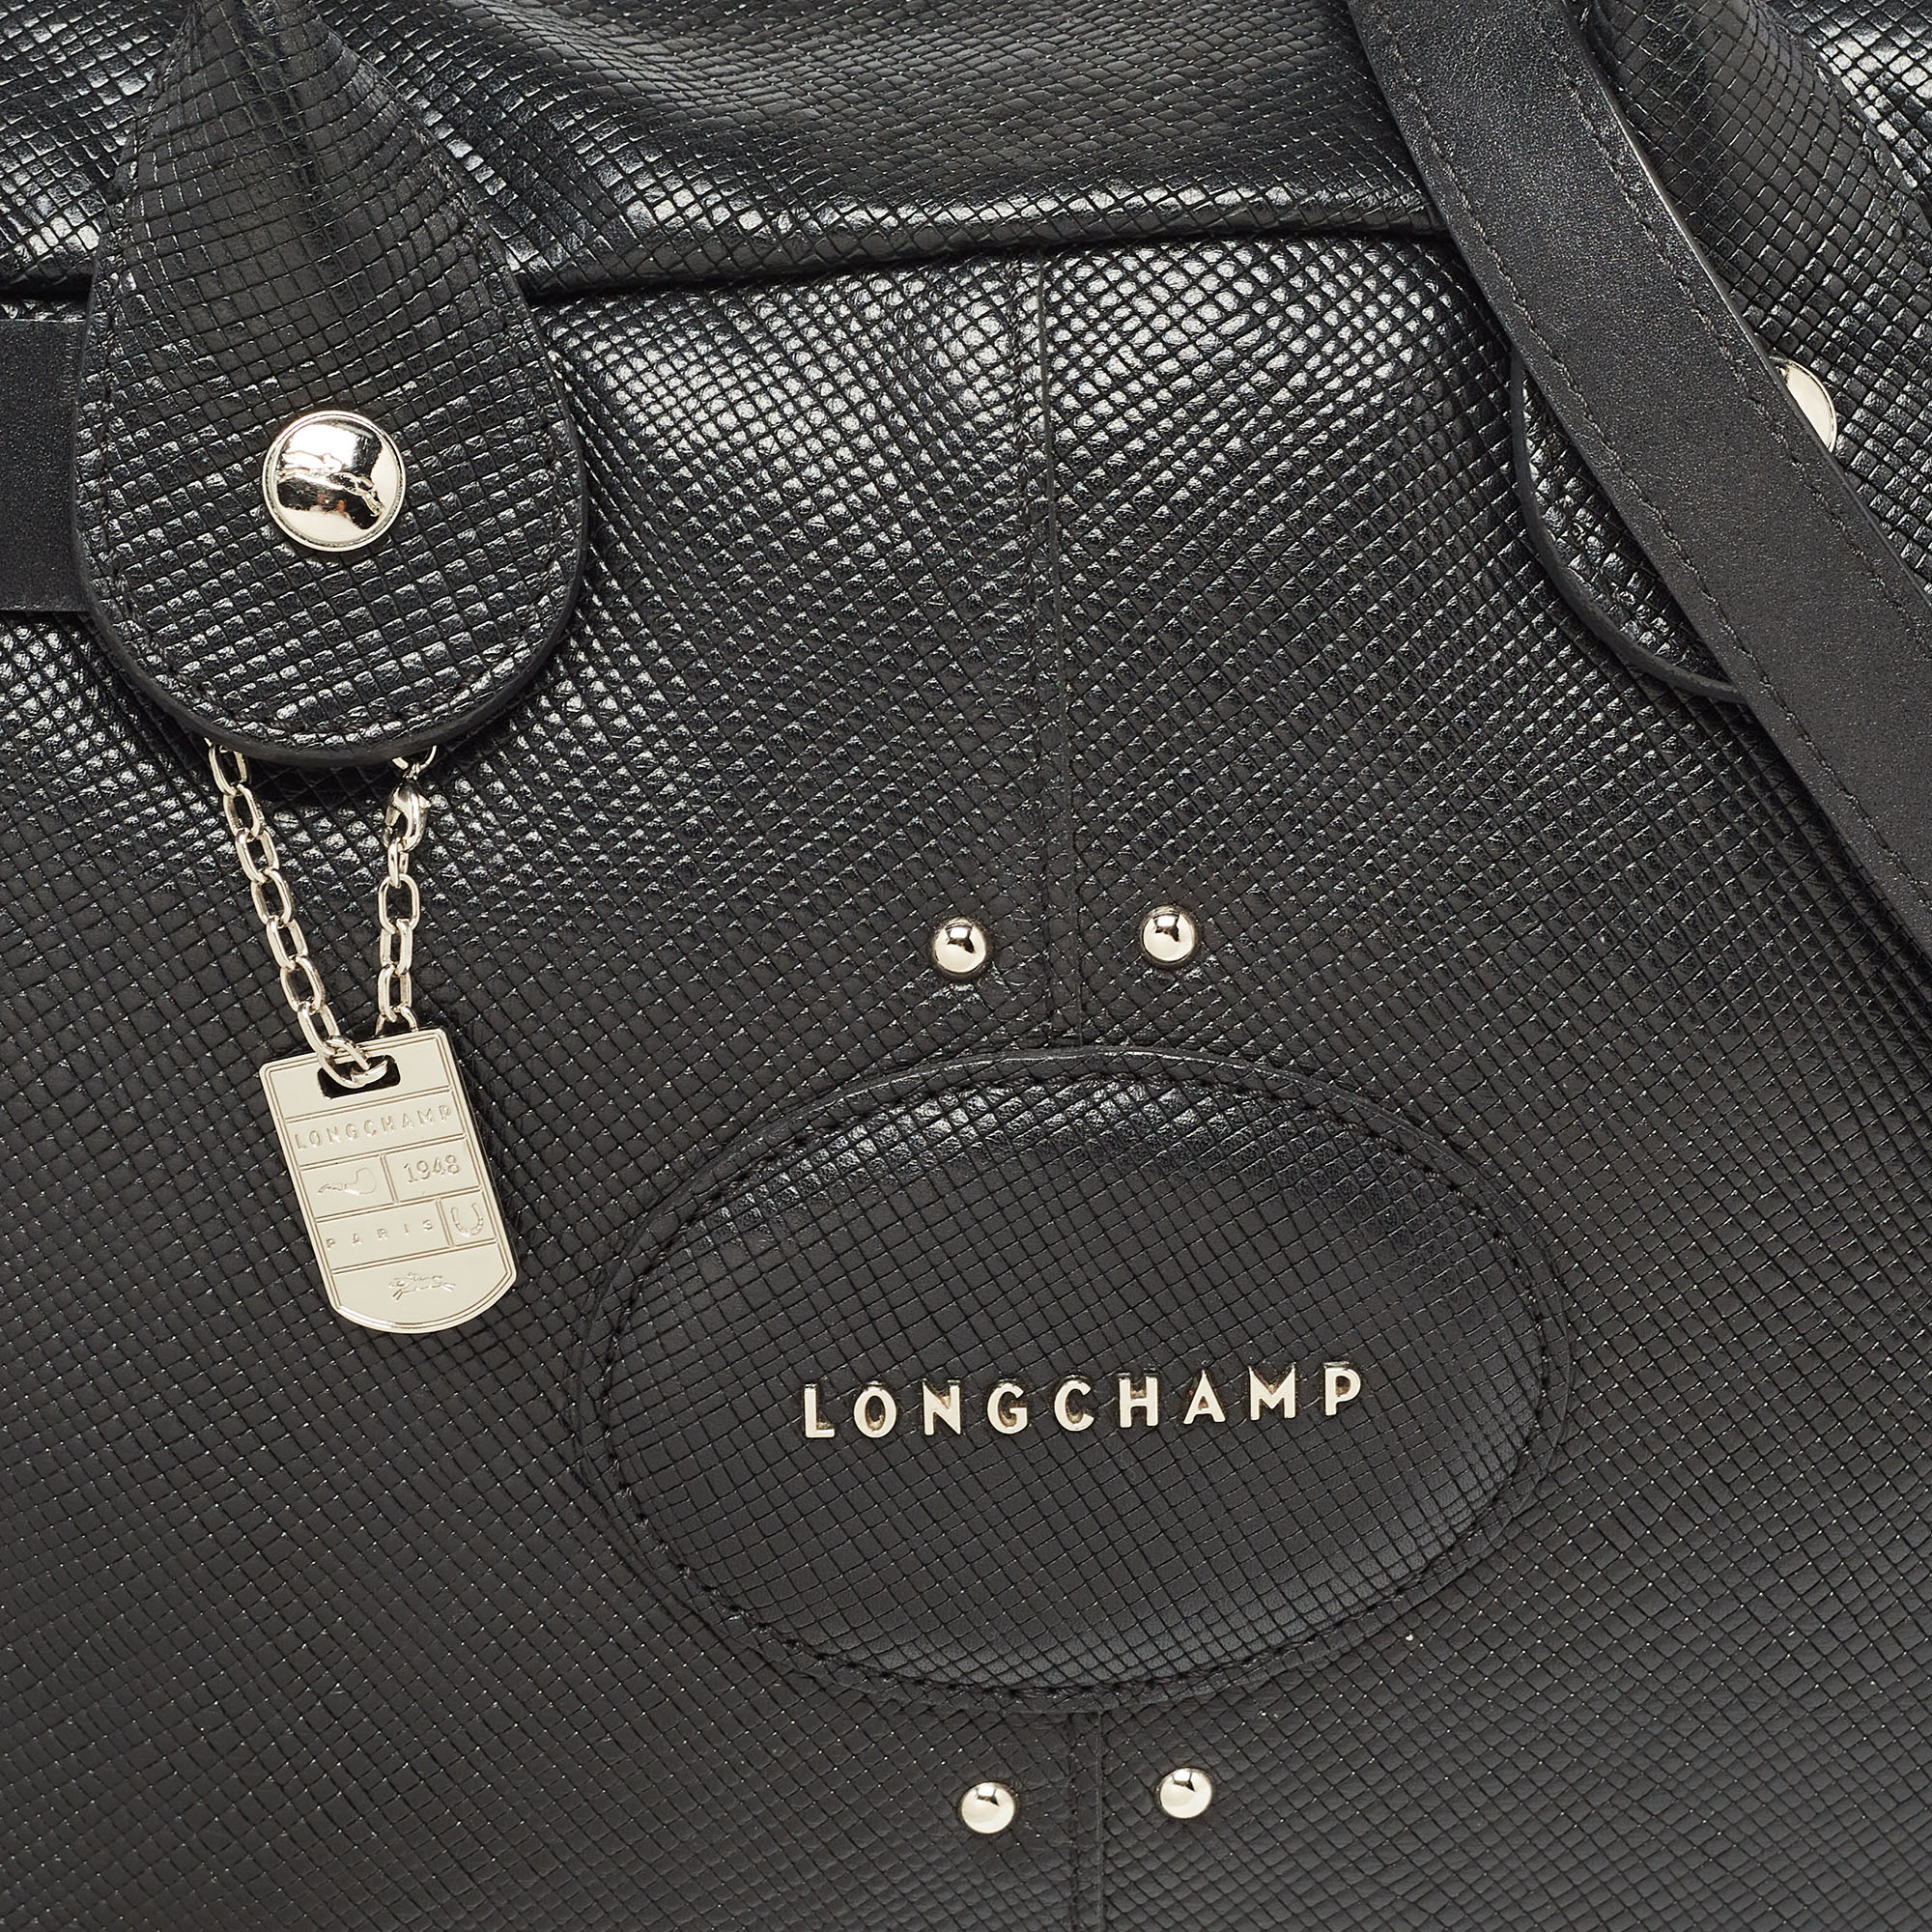 Longchamp Black Textured Leather Tri-Quadri Satchel